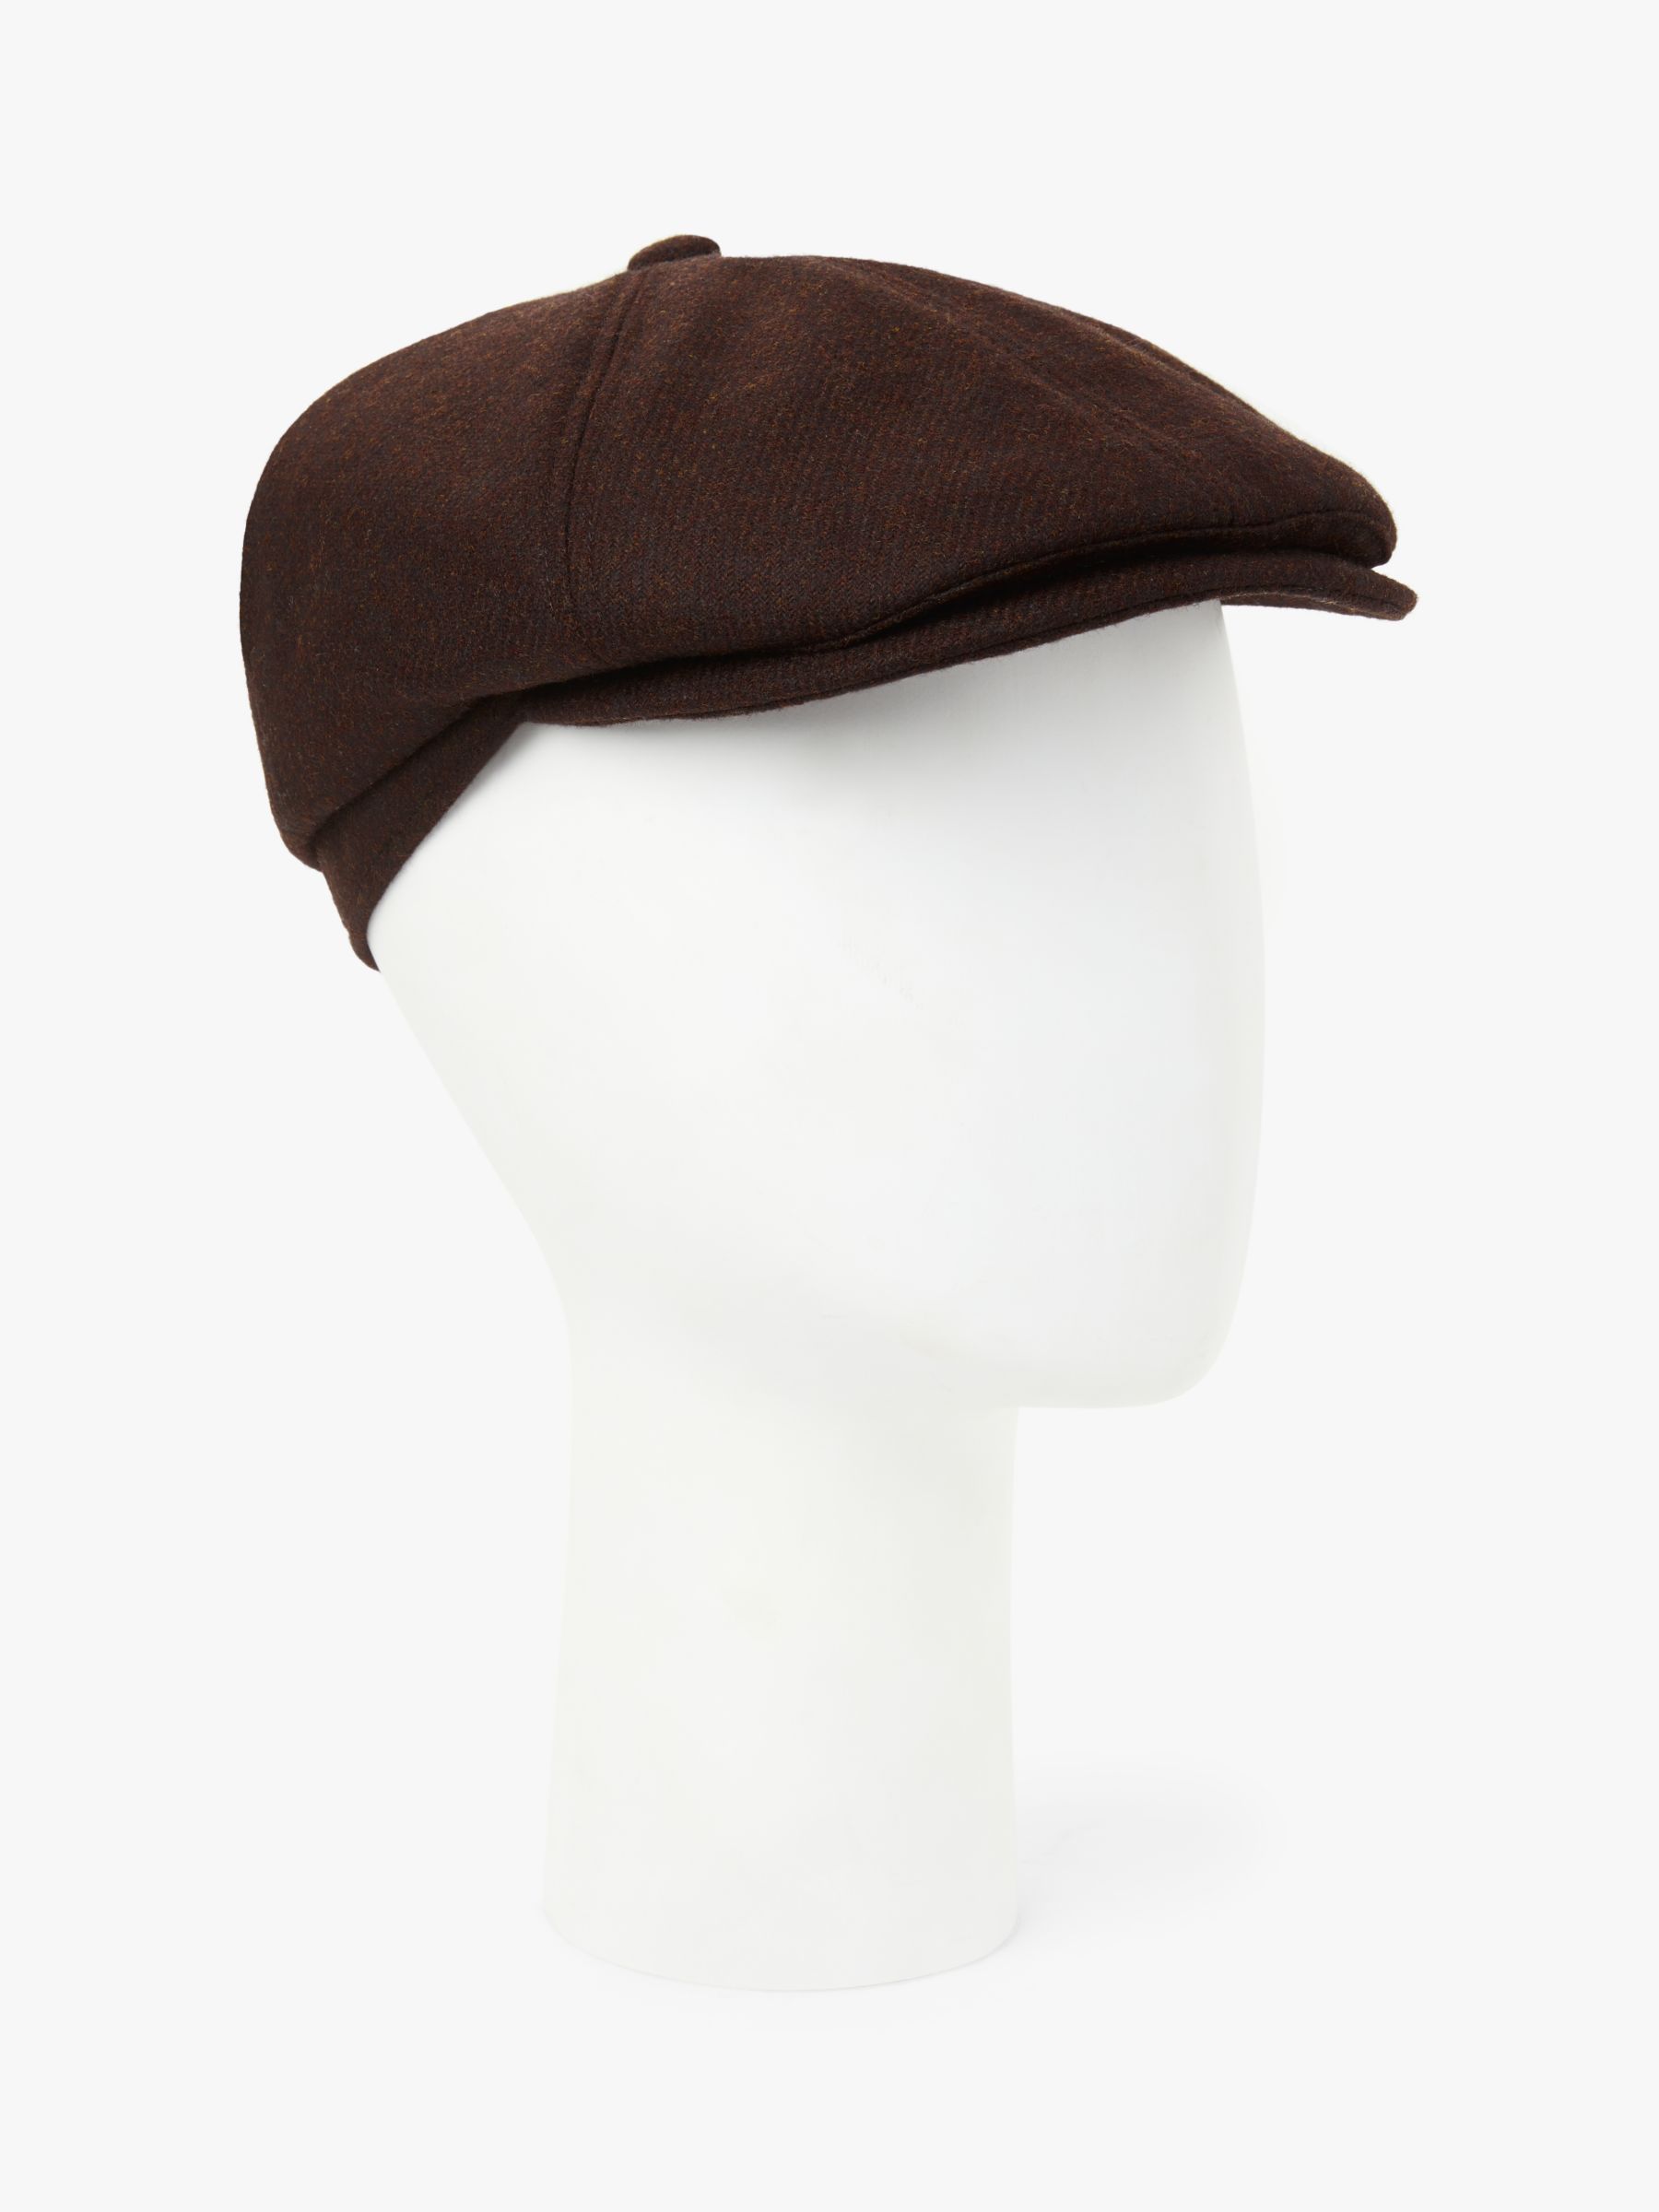 british wool cap